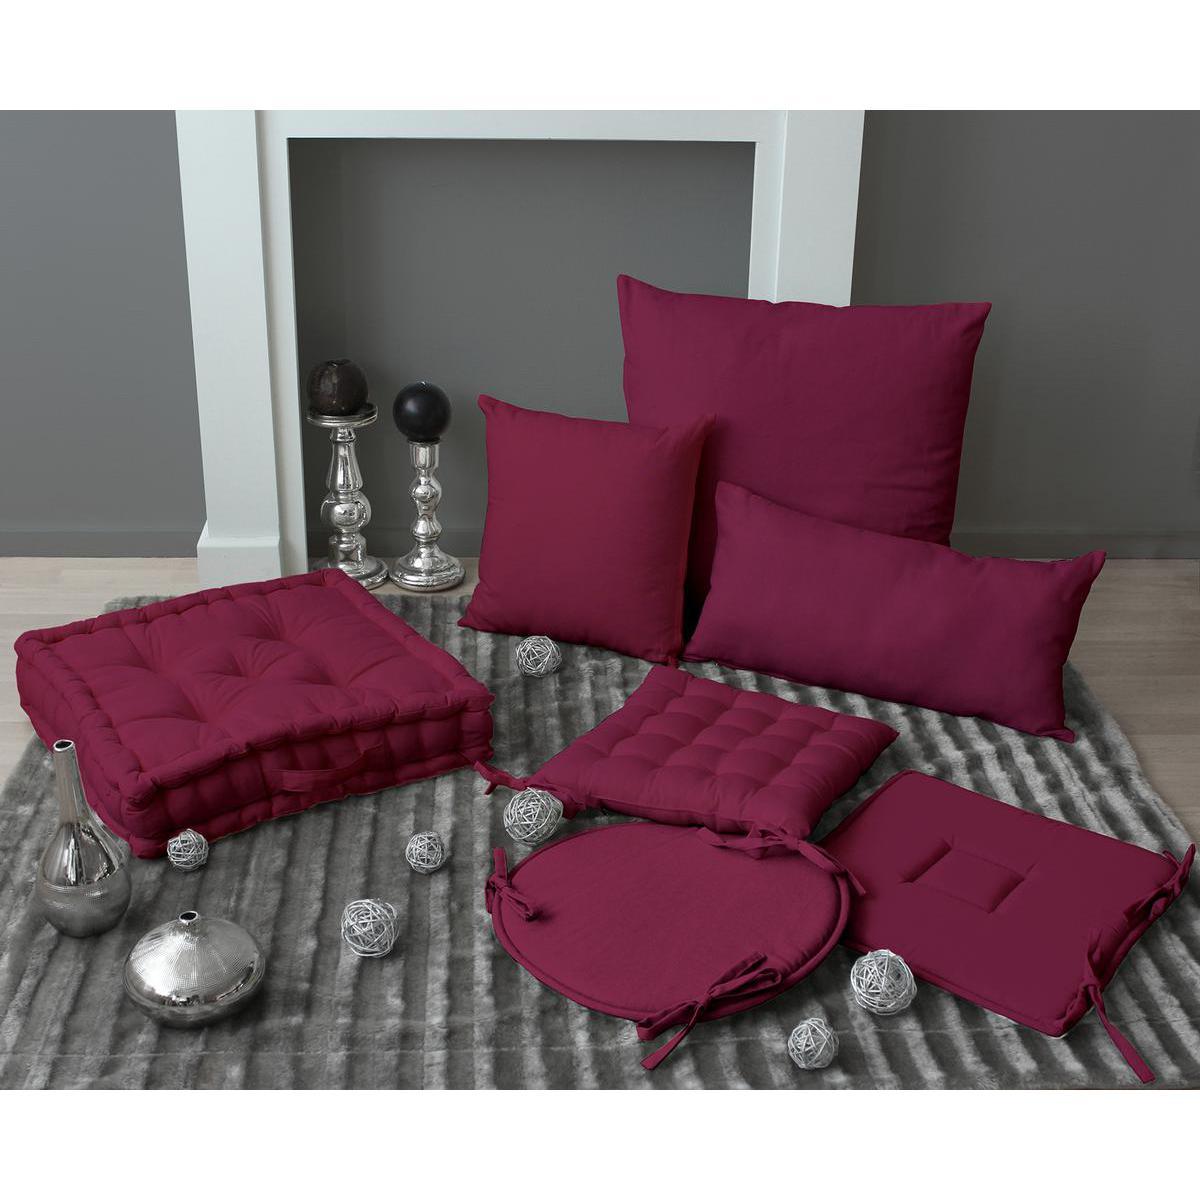 Galette de chaise - 100% polyester - 40 x 40 cm - Violet